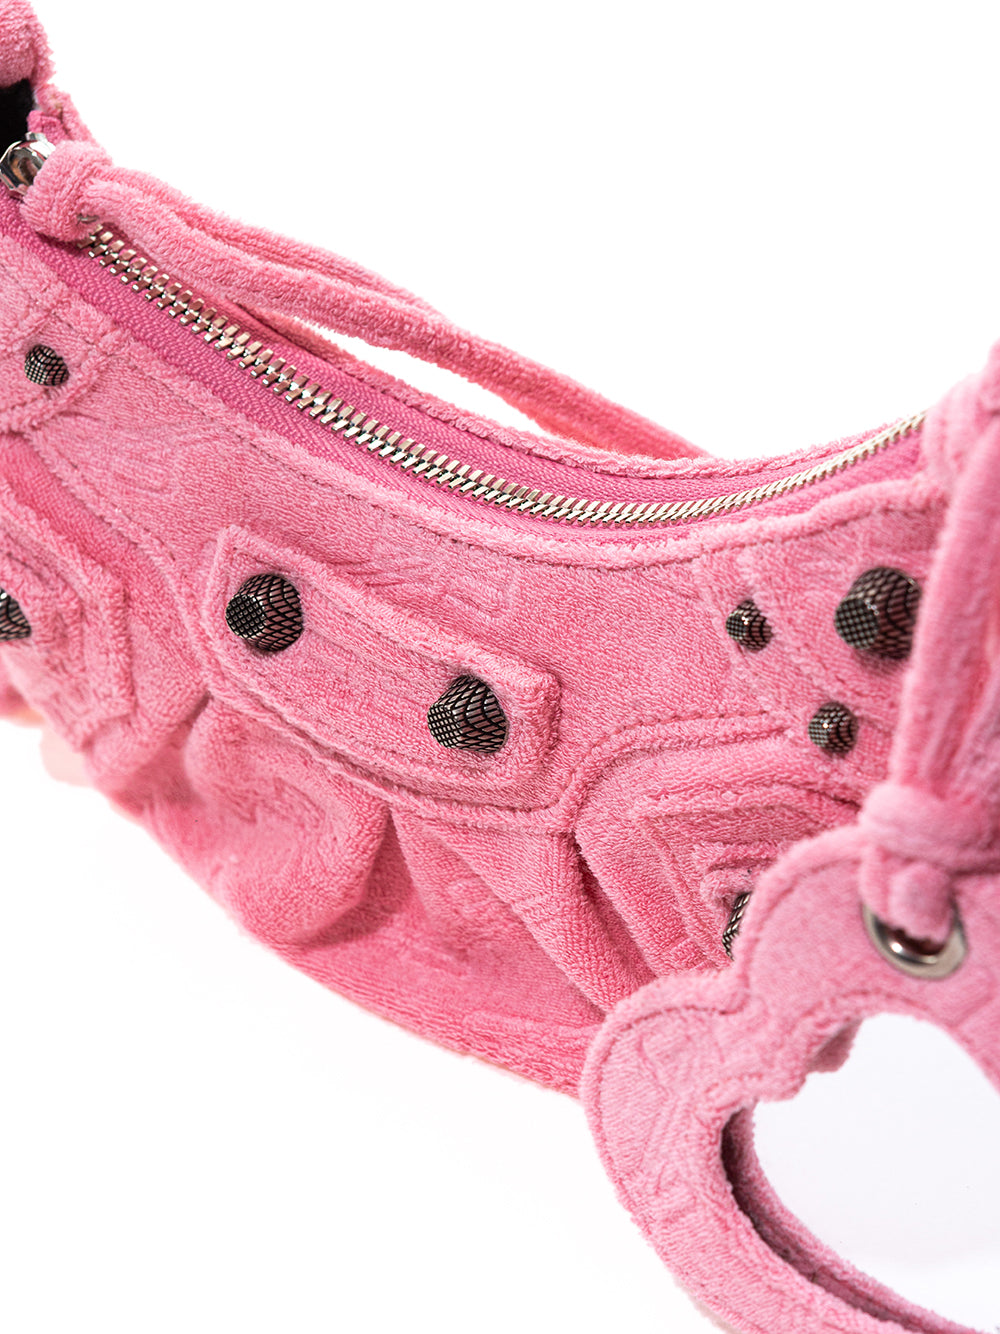 Pink Le Cagole Chenille Shoulder Bag